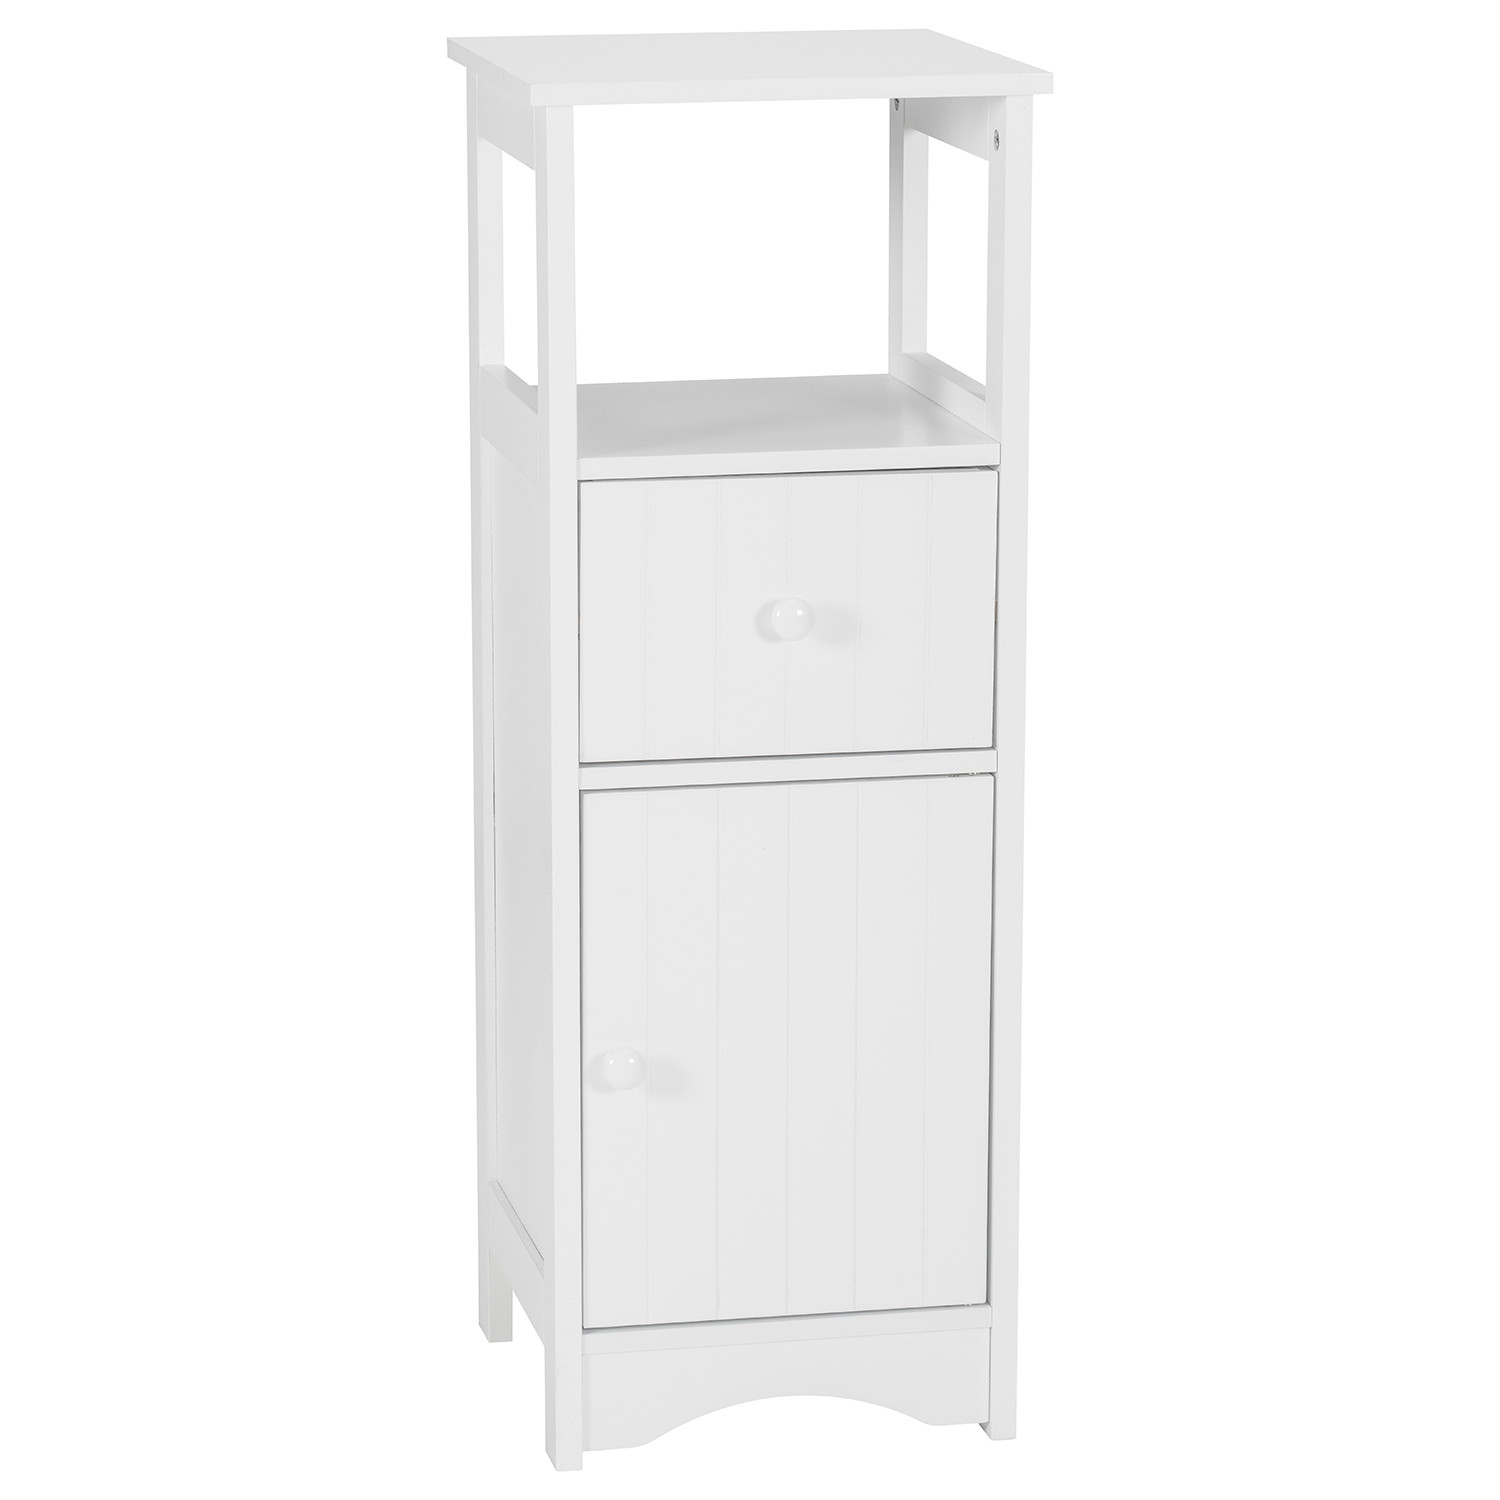 Kingston White Single Drawer Single Door Floor Cabinet Image 2